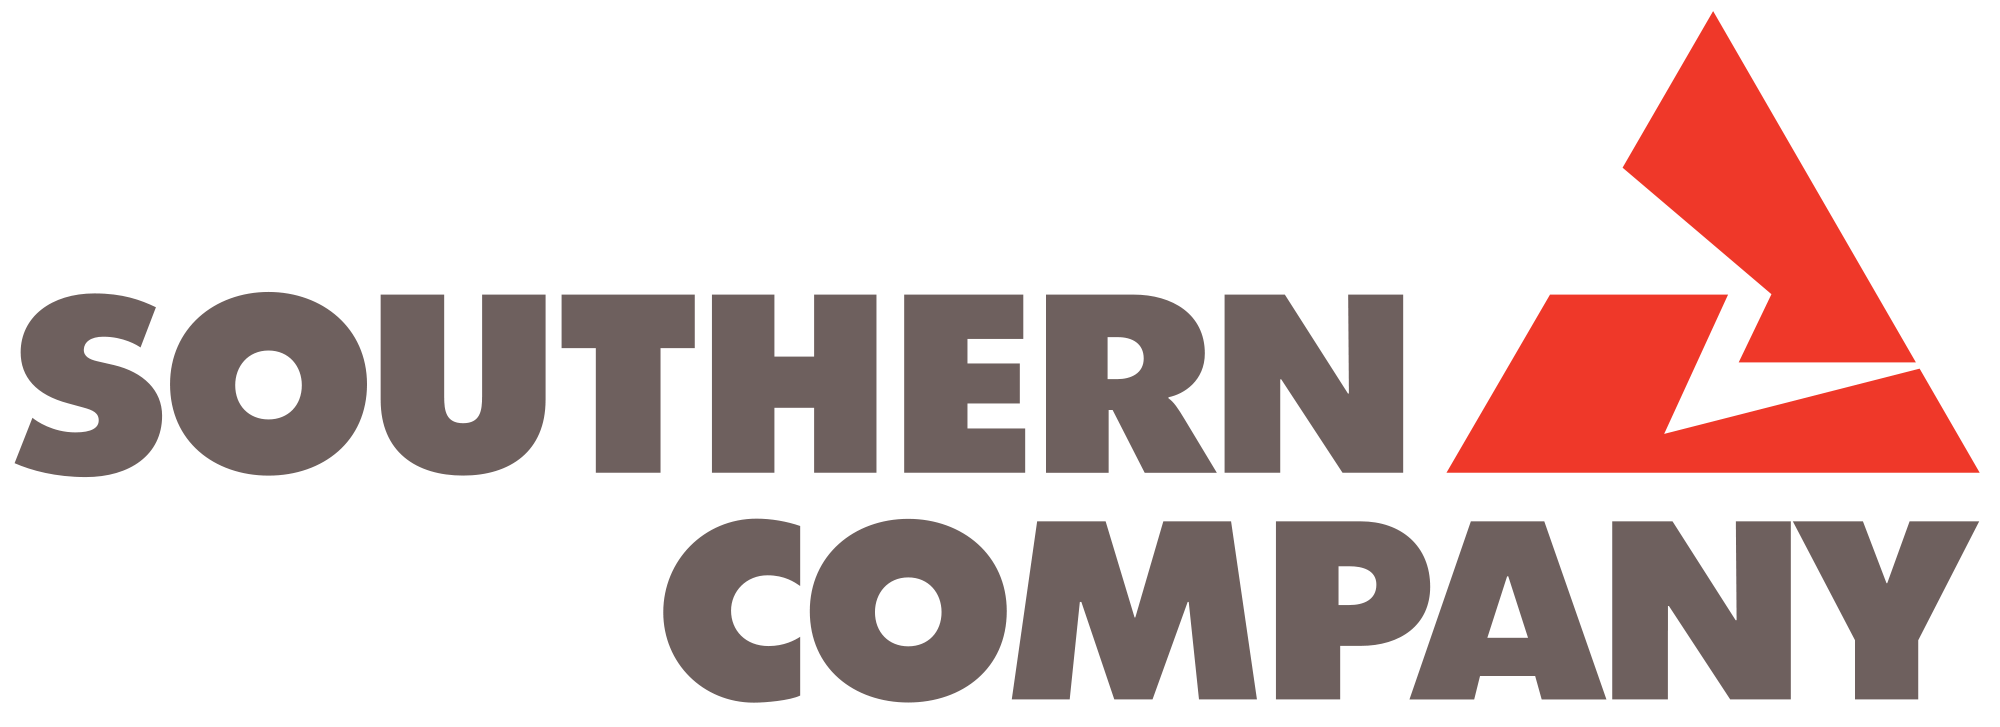 Southern Company Logo - Southern Company logo.svg